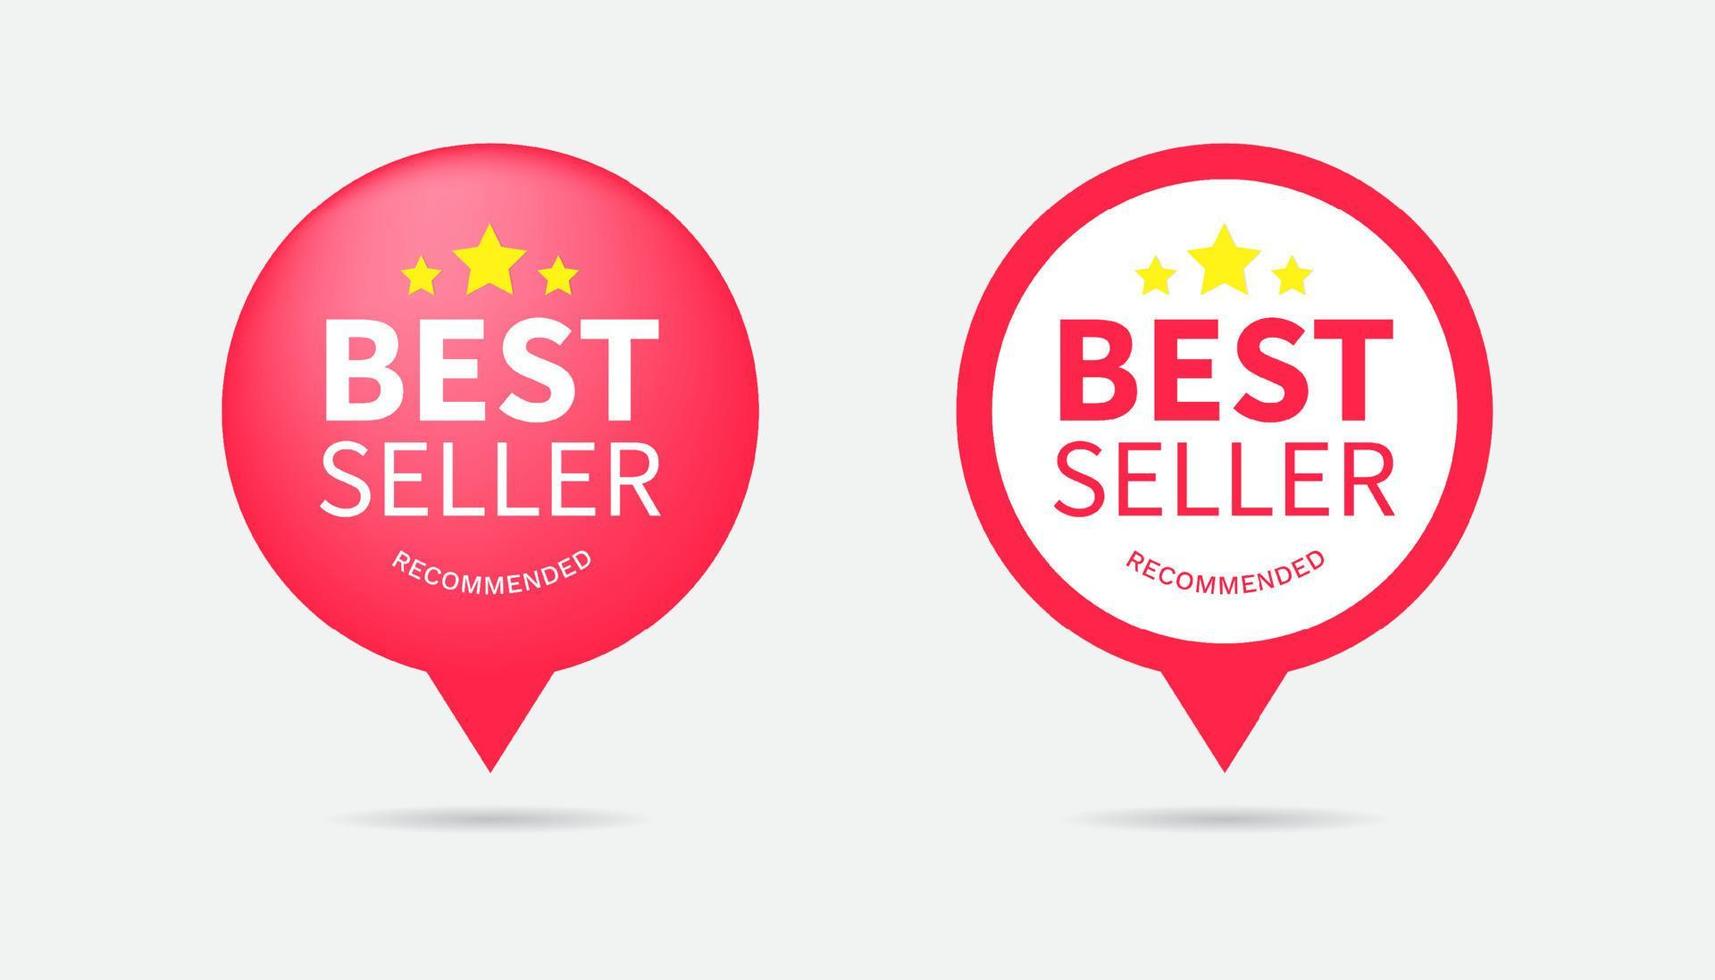 impostato di migliore venditore testo con Sorridi piace forma su rosso cerchio icona, creativo tipografia per attività commerciale, promozione e pubblicità vettore